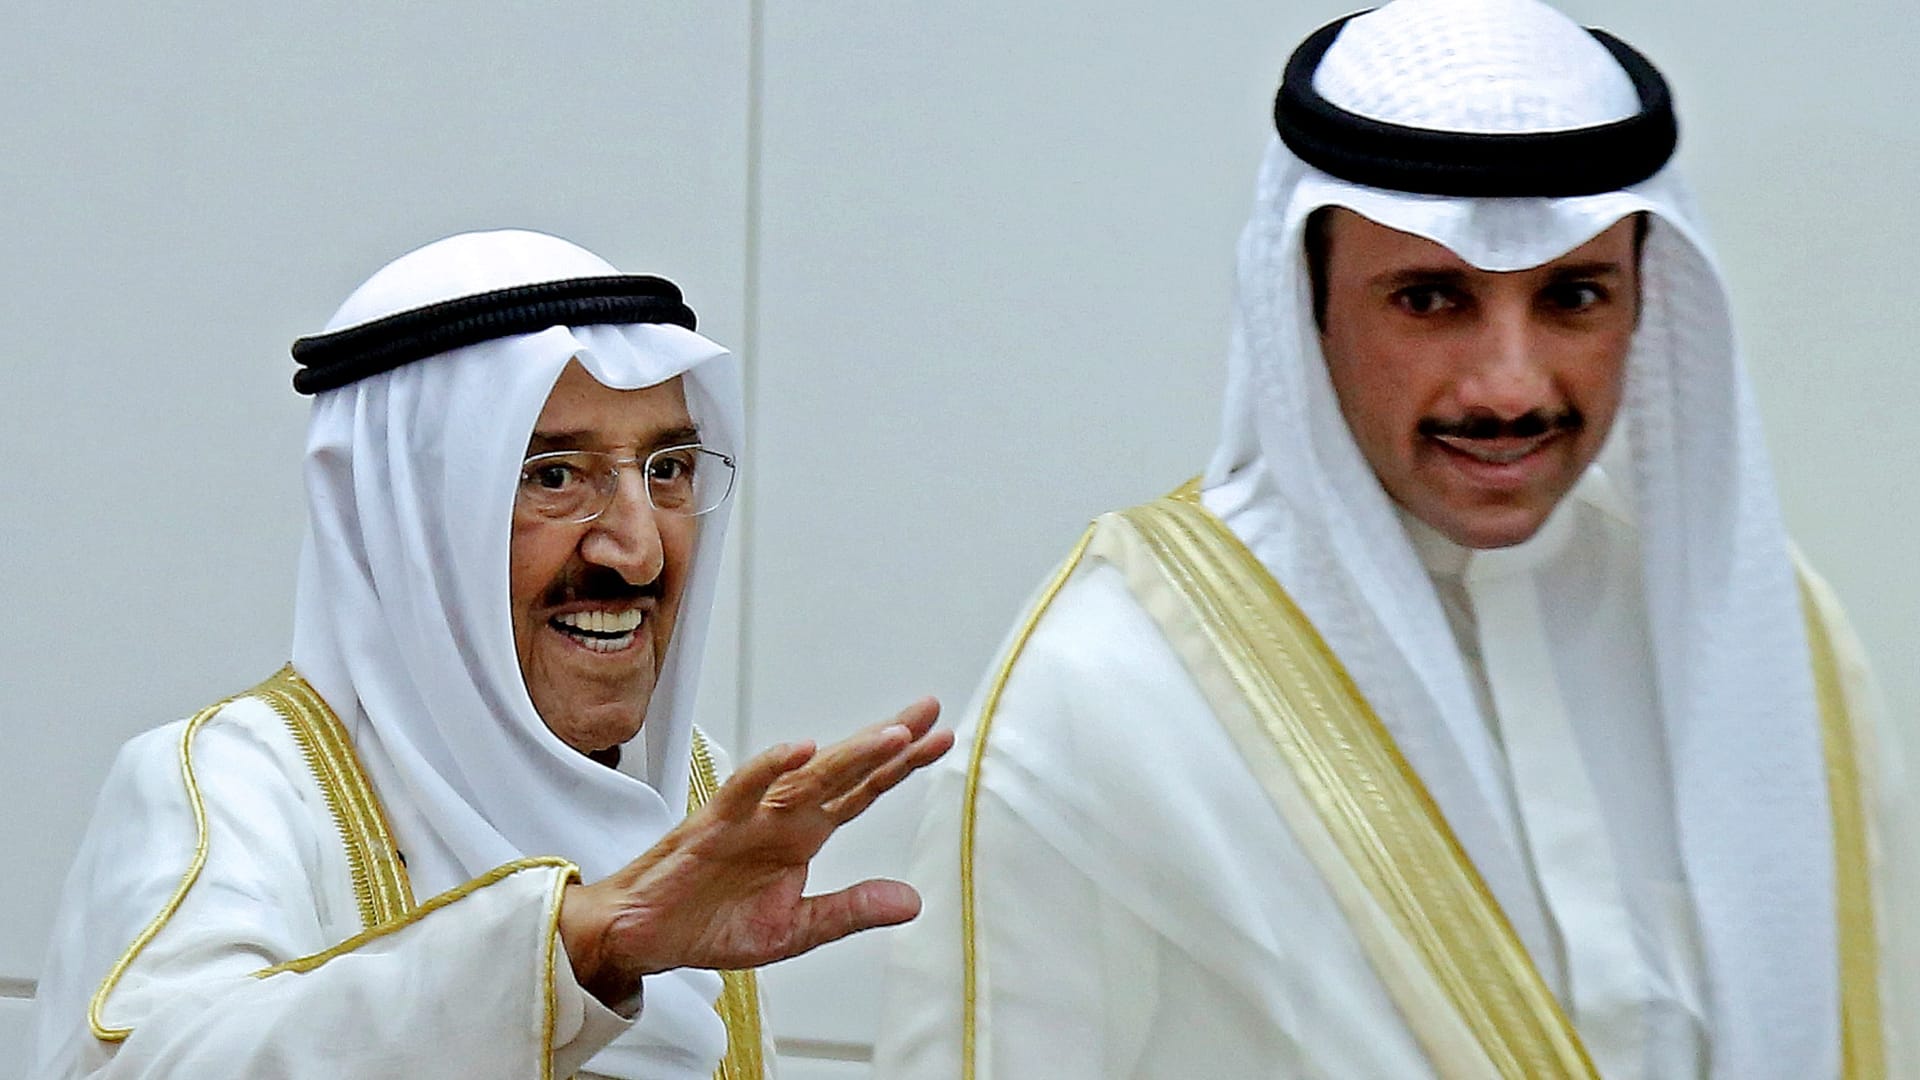 رئيس مجلس الأمة الكويتي يكشف أخبارا حول صحة أمير البلاد وينقل رسالة للسفيرة الأمريكية